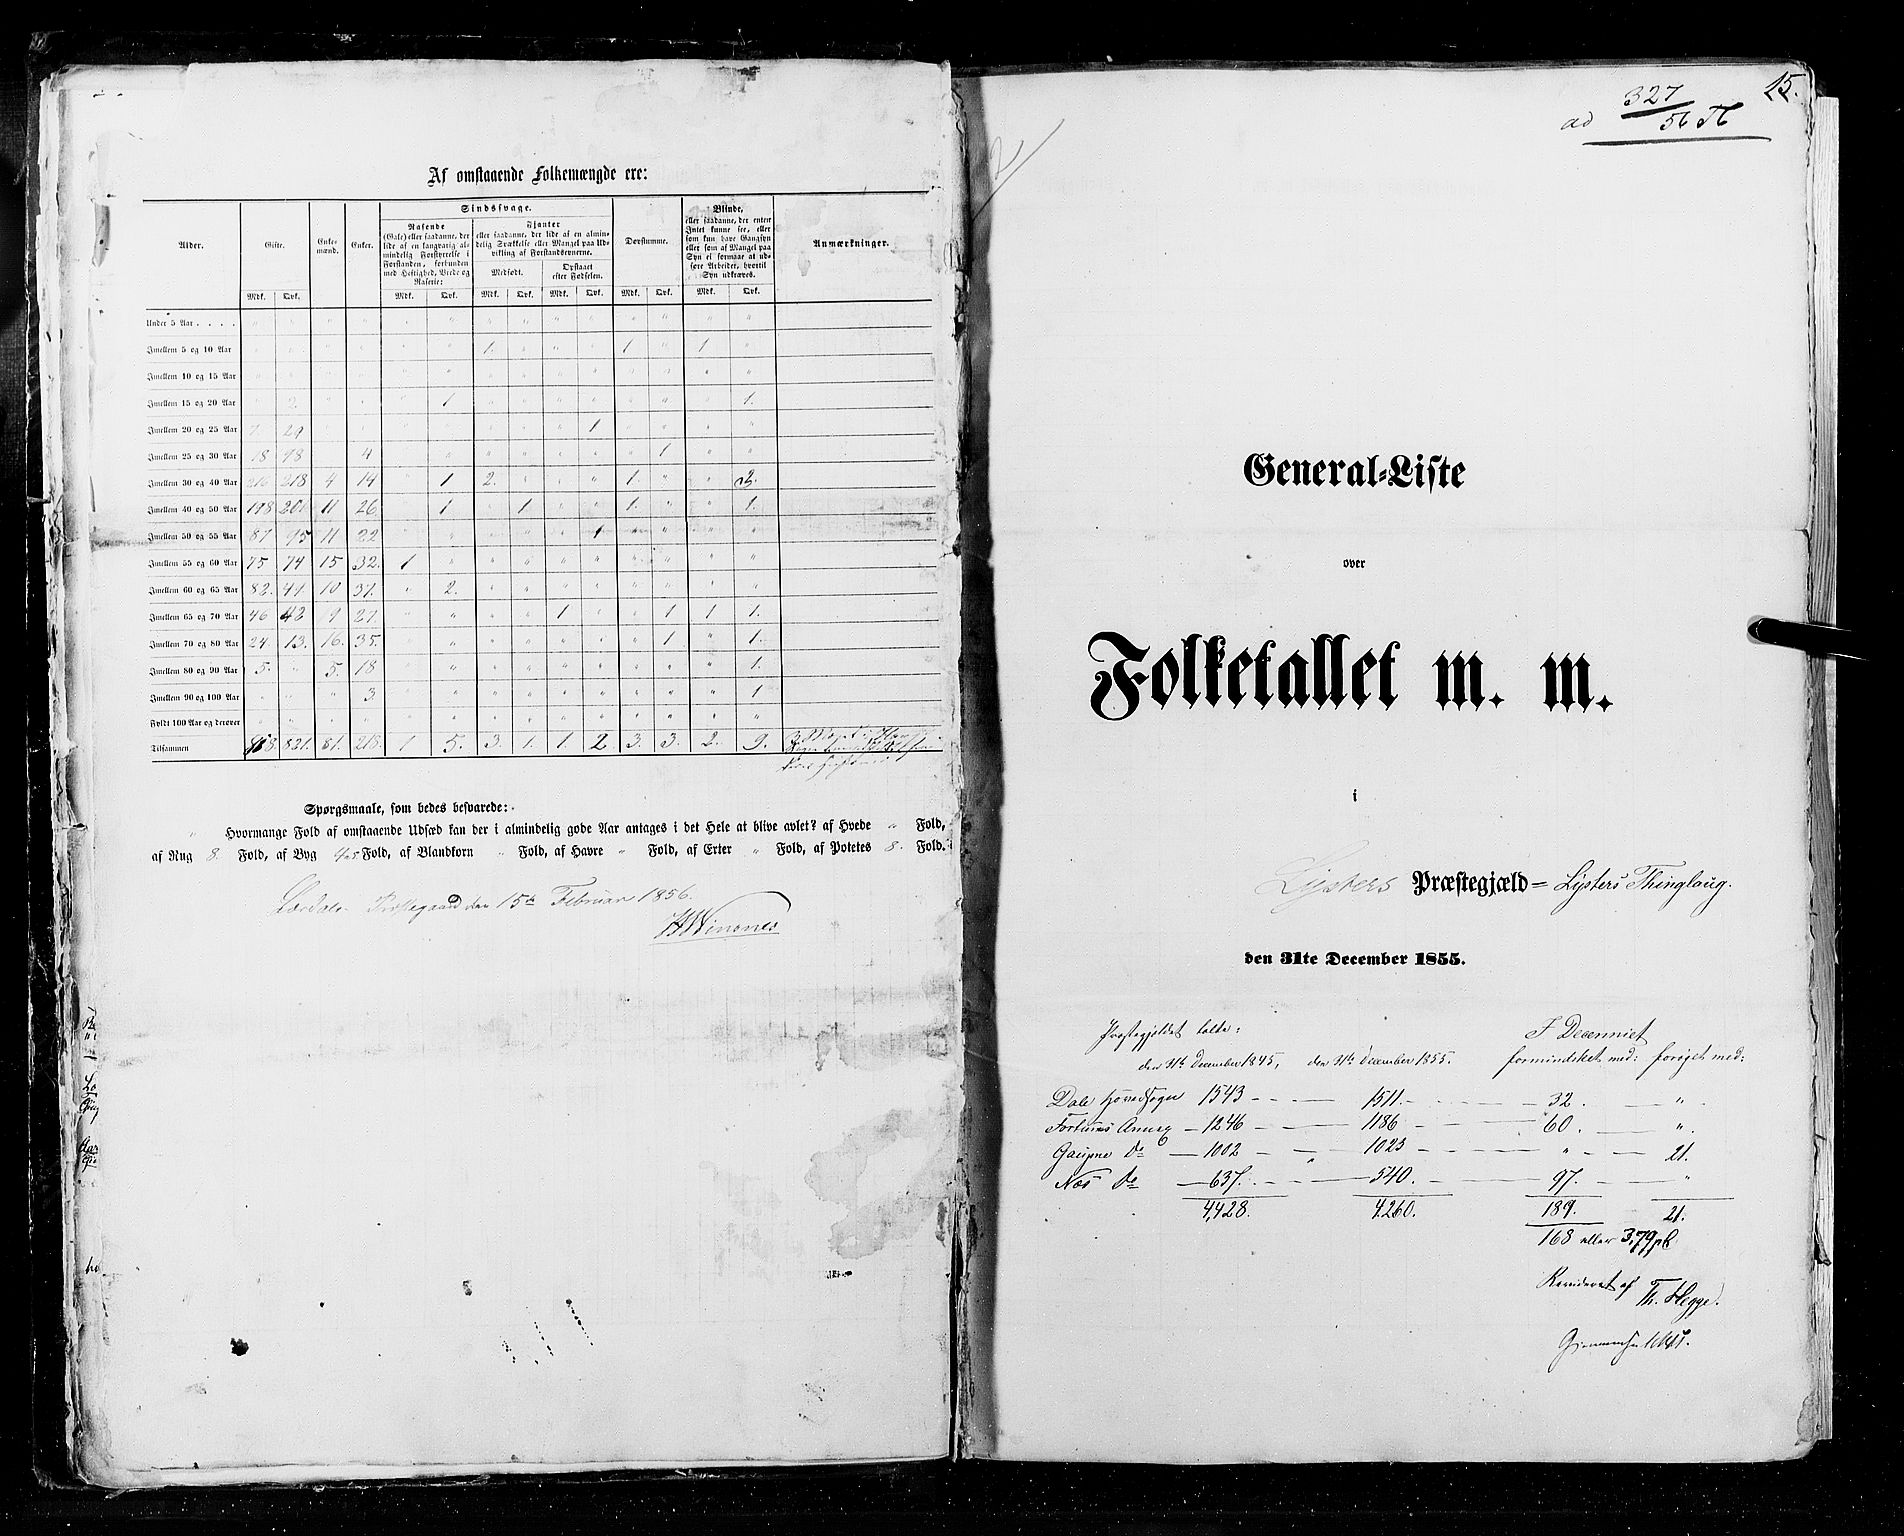 RA, Census 1855, vol. 5: Nordre Bergenhus amt, Romsdal amt og Søndre Trondhjem amt, 1855, p. 15